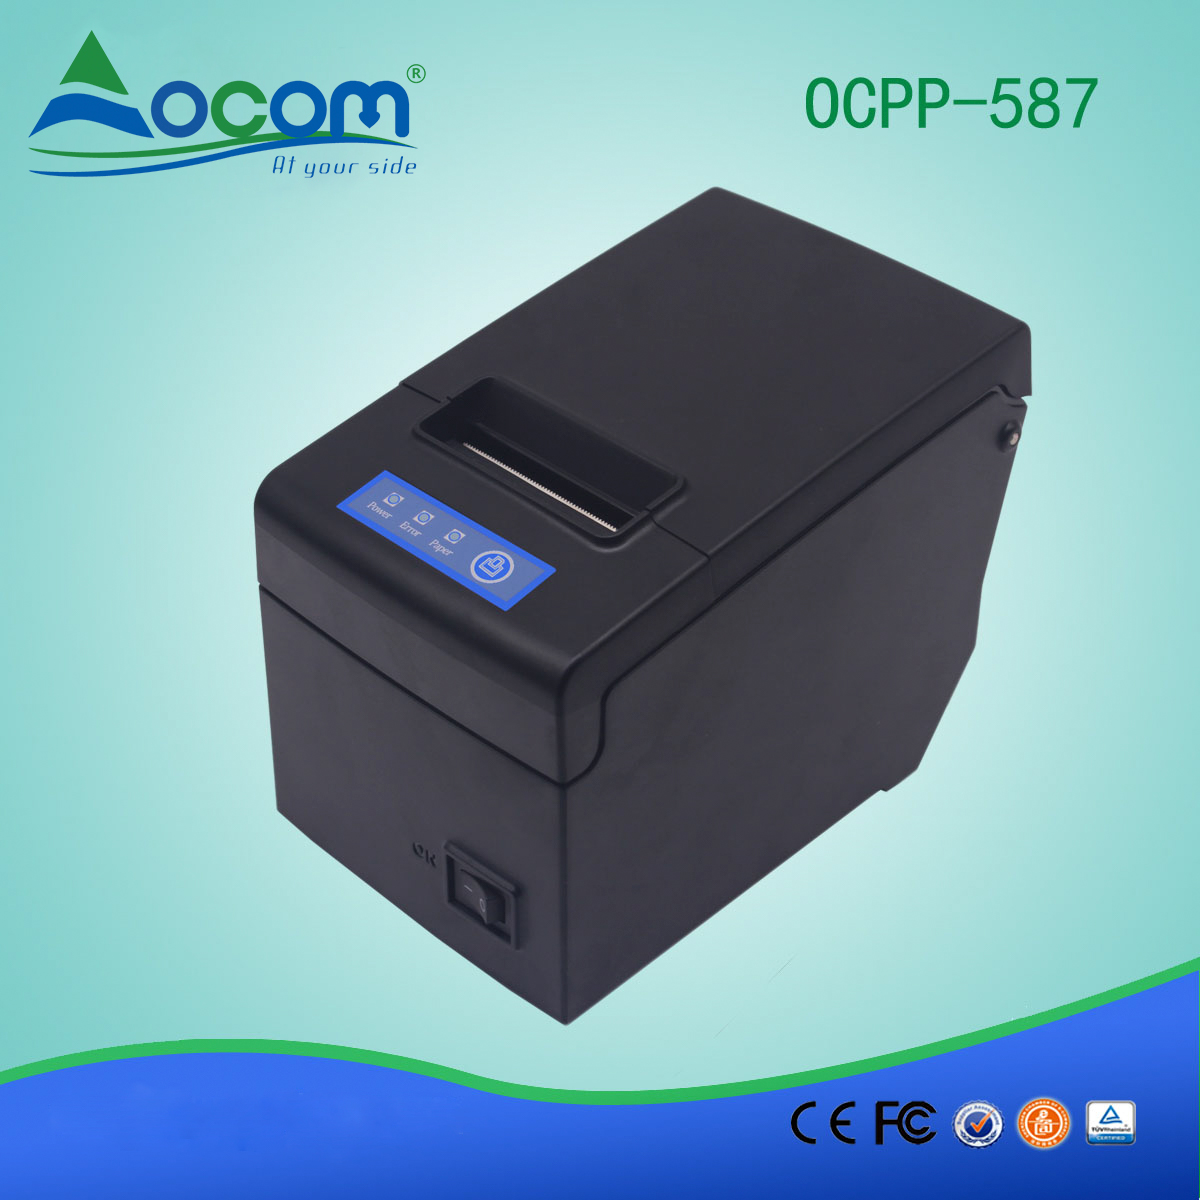 58 χιλ. Εκτυπωτής θερμικής απόδειξης OCPP-587-UB USB + θύρα Bluetooth